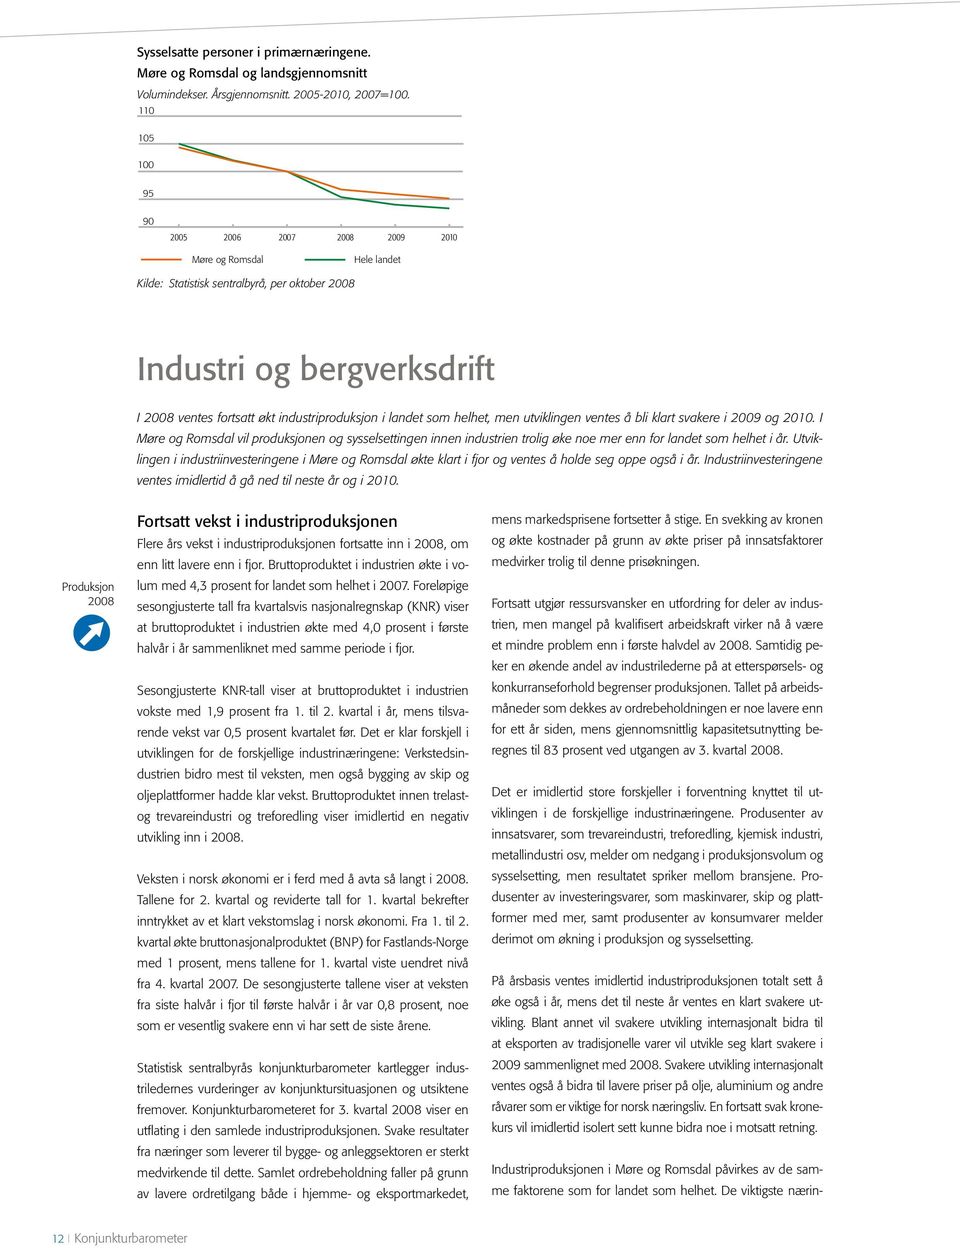 klart svakere i 2009 og 2010. I Møre og Romsdal vil produksjonen og sysselsettingen innen industrien trolig øke noe mer enn for landet som helhet i år.